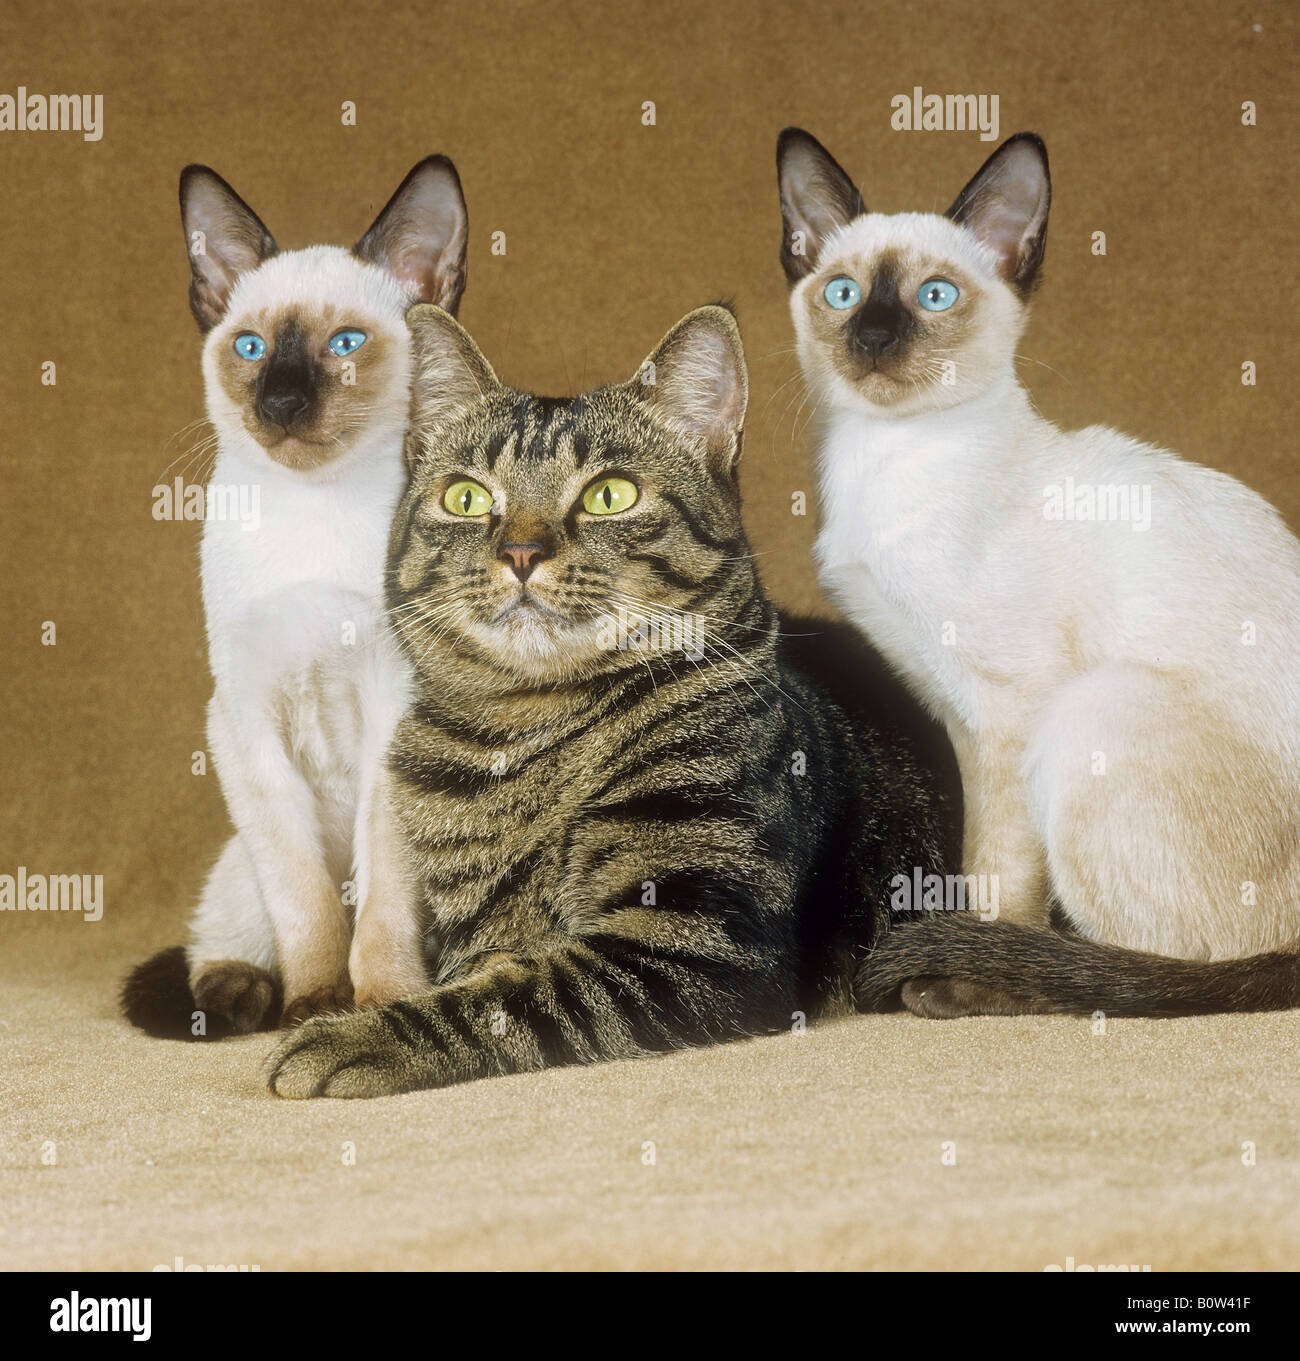 Chat domestique avec deux chats siamois Banque D'Images